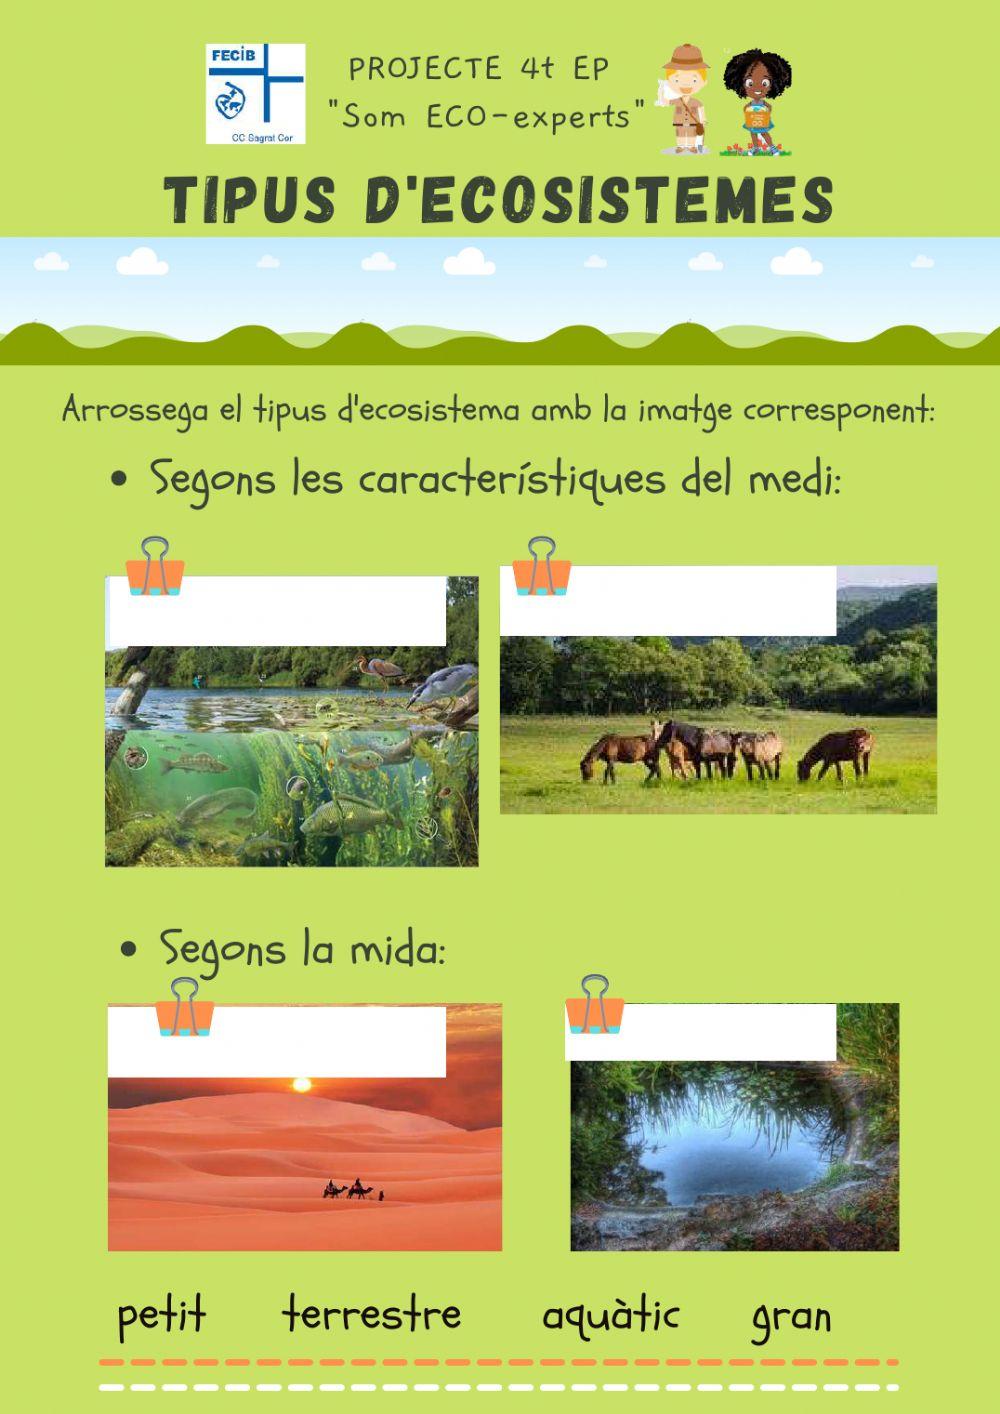 Tipus d'ecosistemes